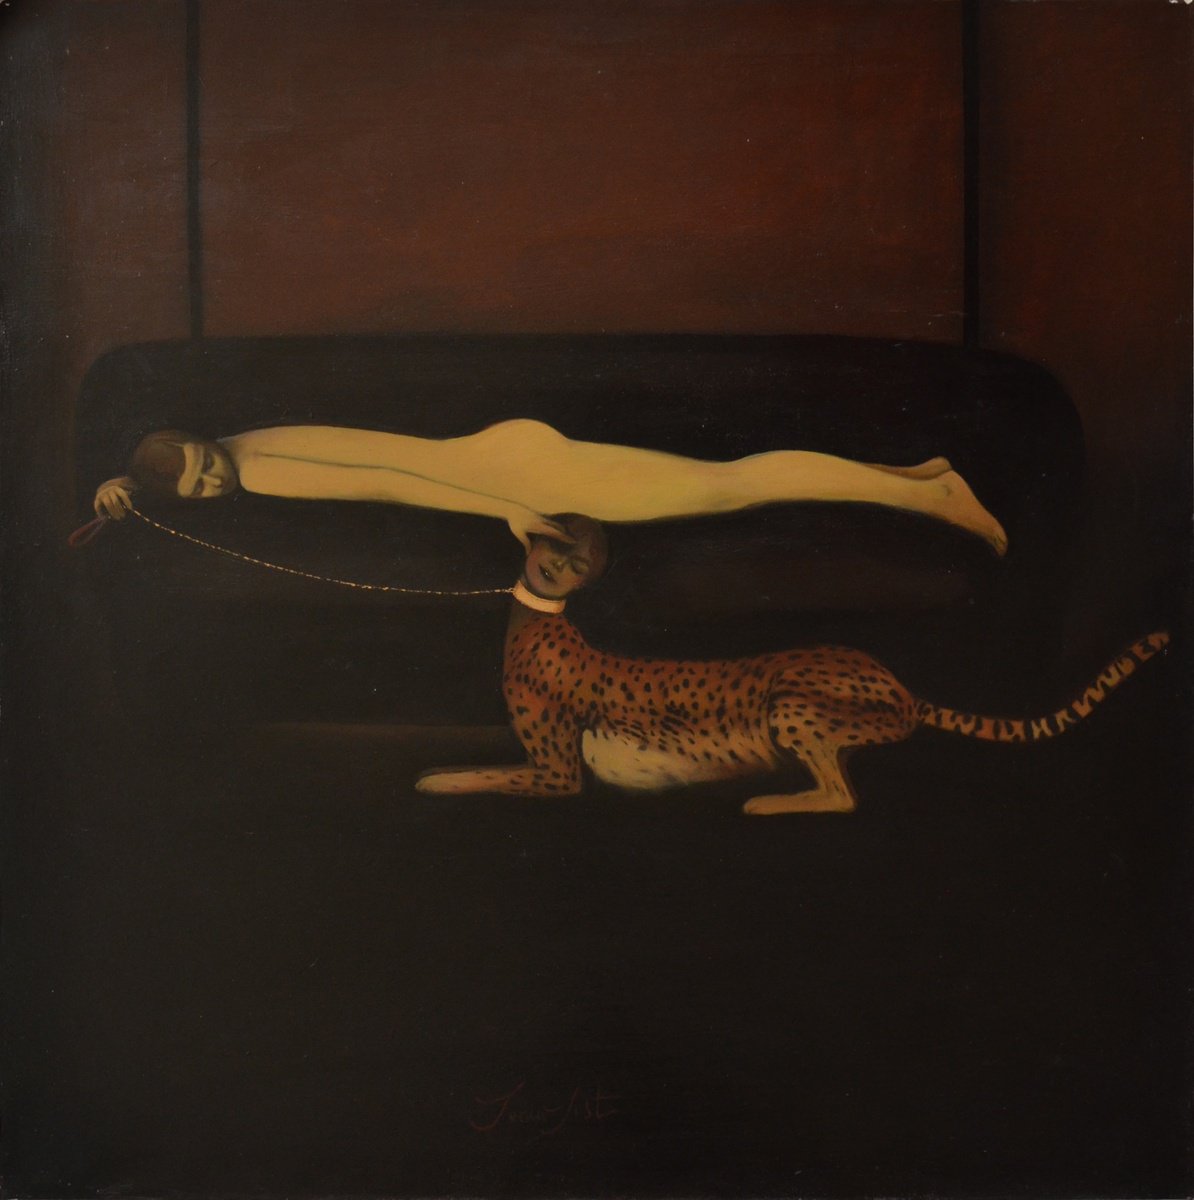 Il Leopardo by Sonia Sist